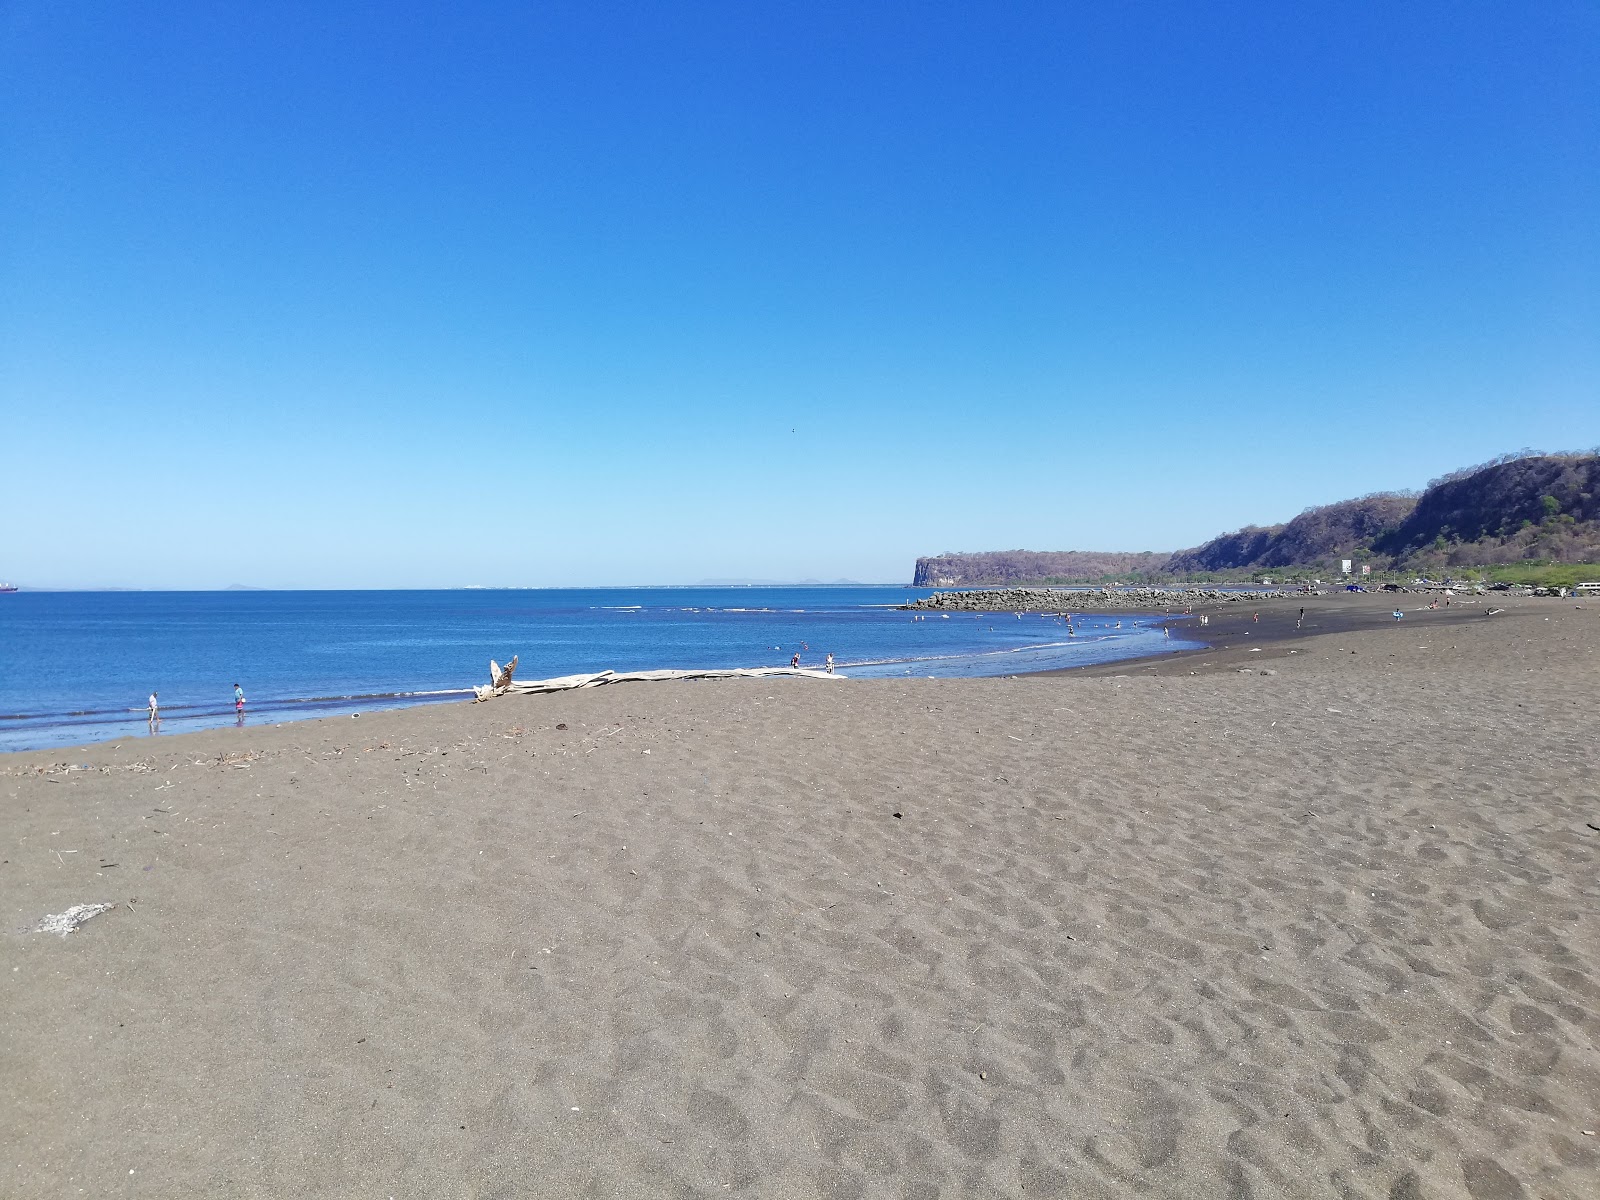 Playa Caldera Bulevar'in fotoğrafı gri kum yüzey ile